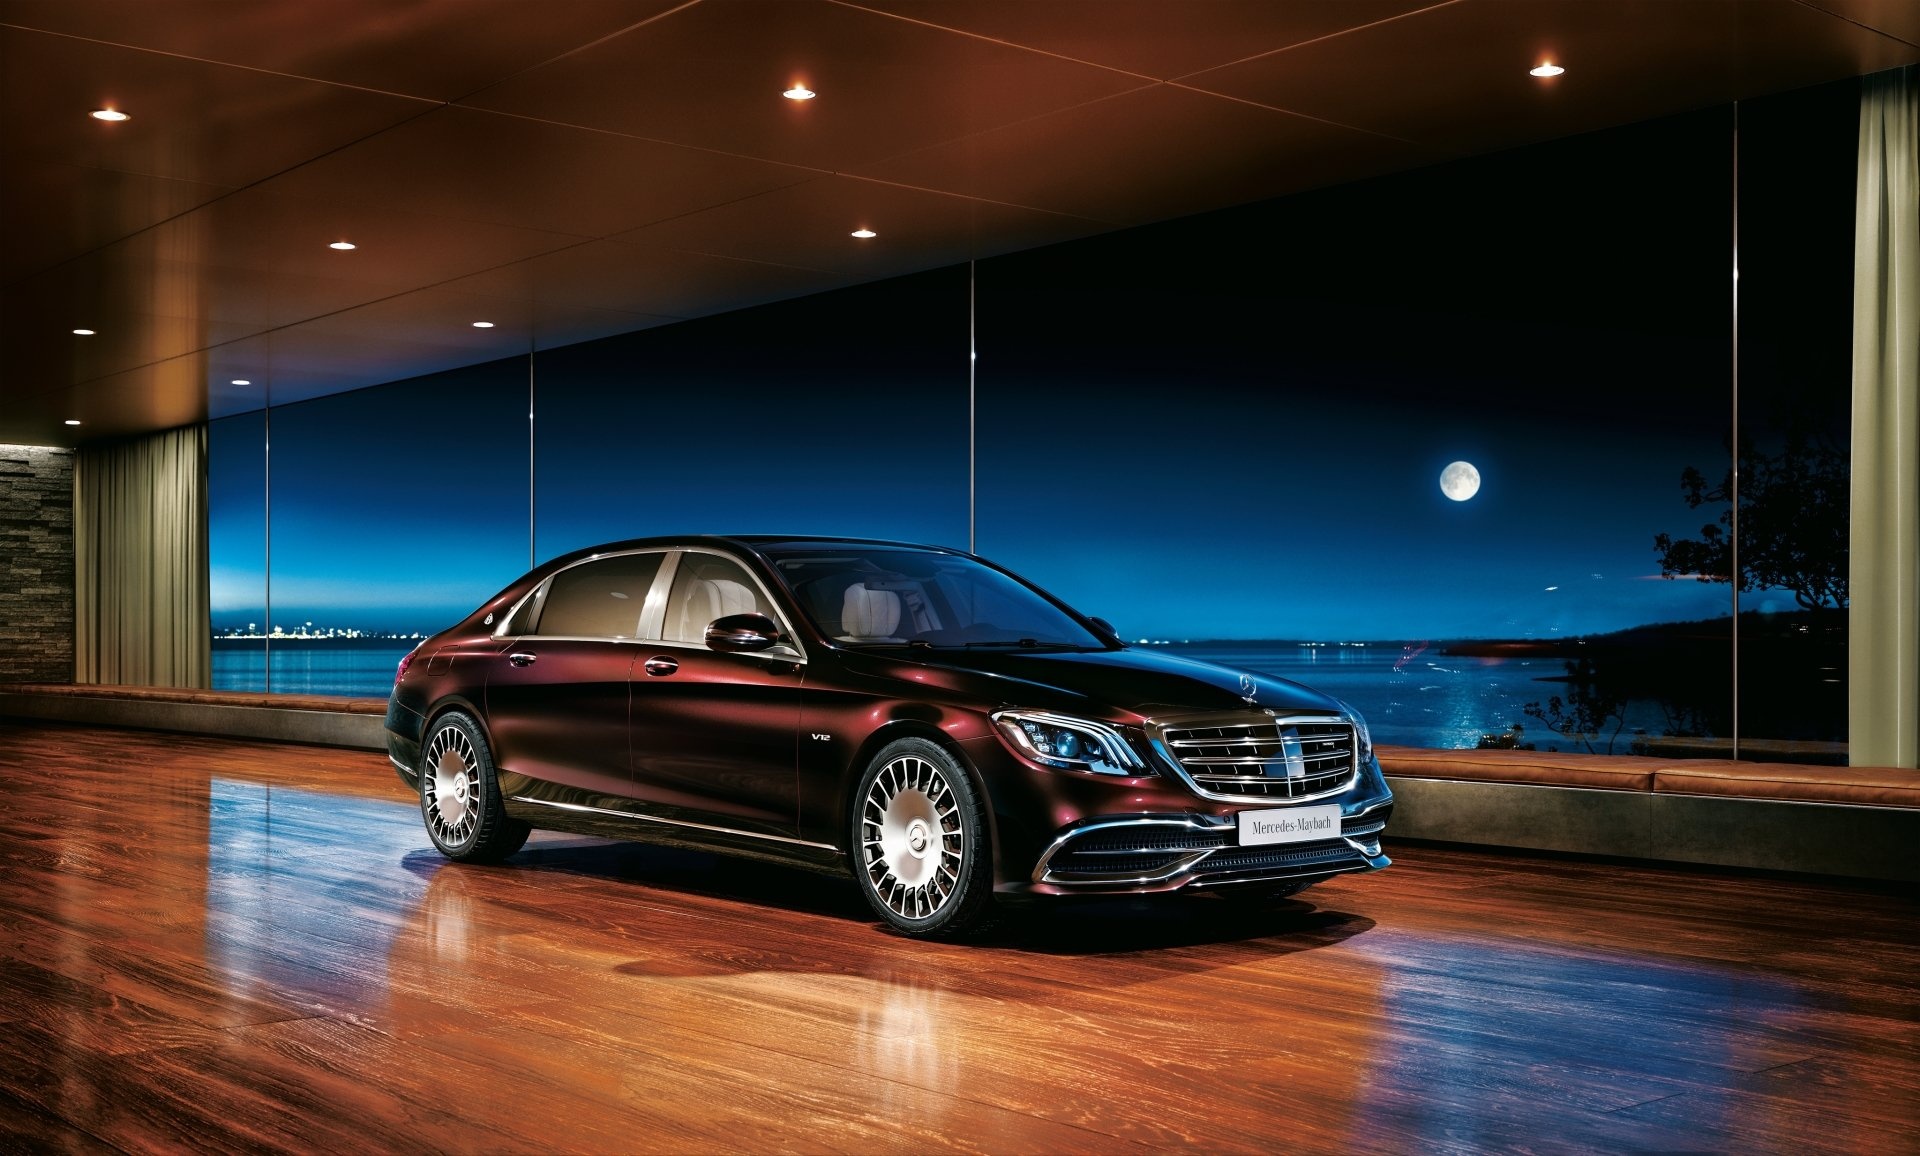 Mercedes-Benz S-Class, 4K wallpapers, Stunning visuals, Top-class luxury, 1920x1160 HD Desktop